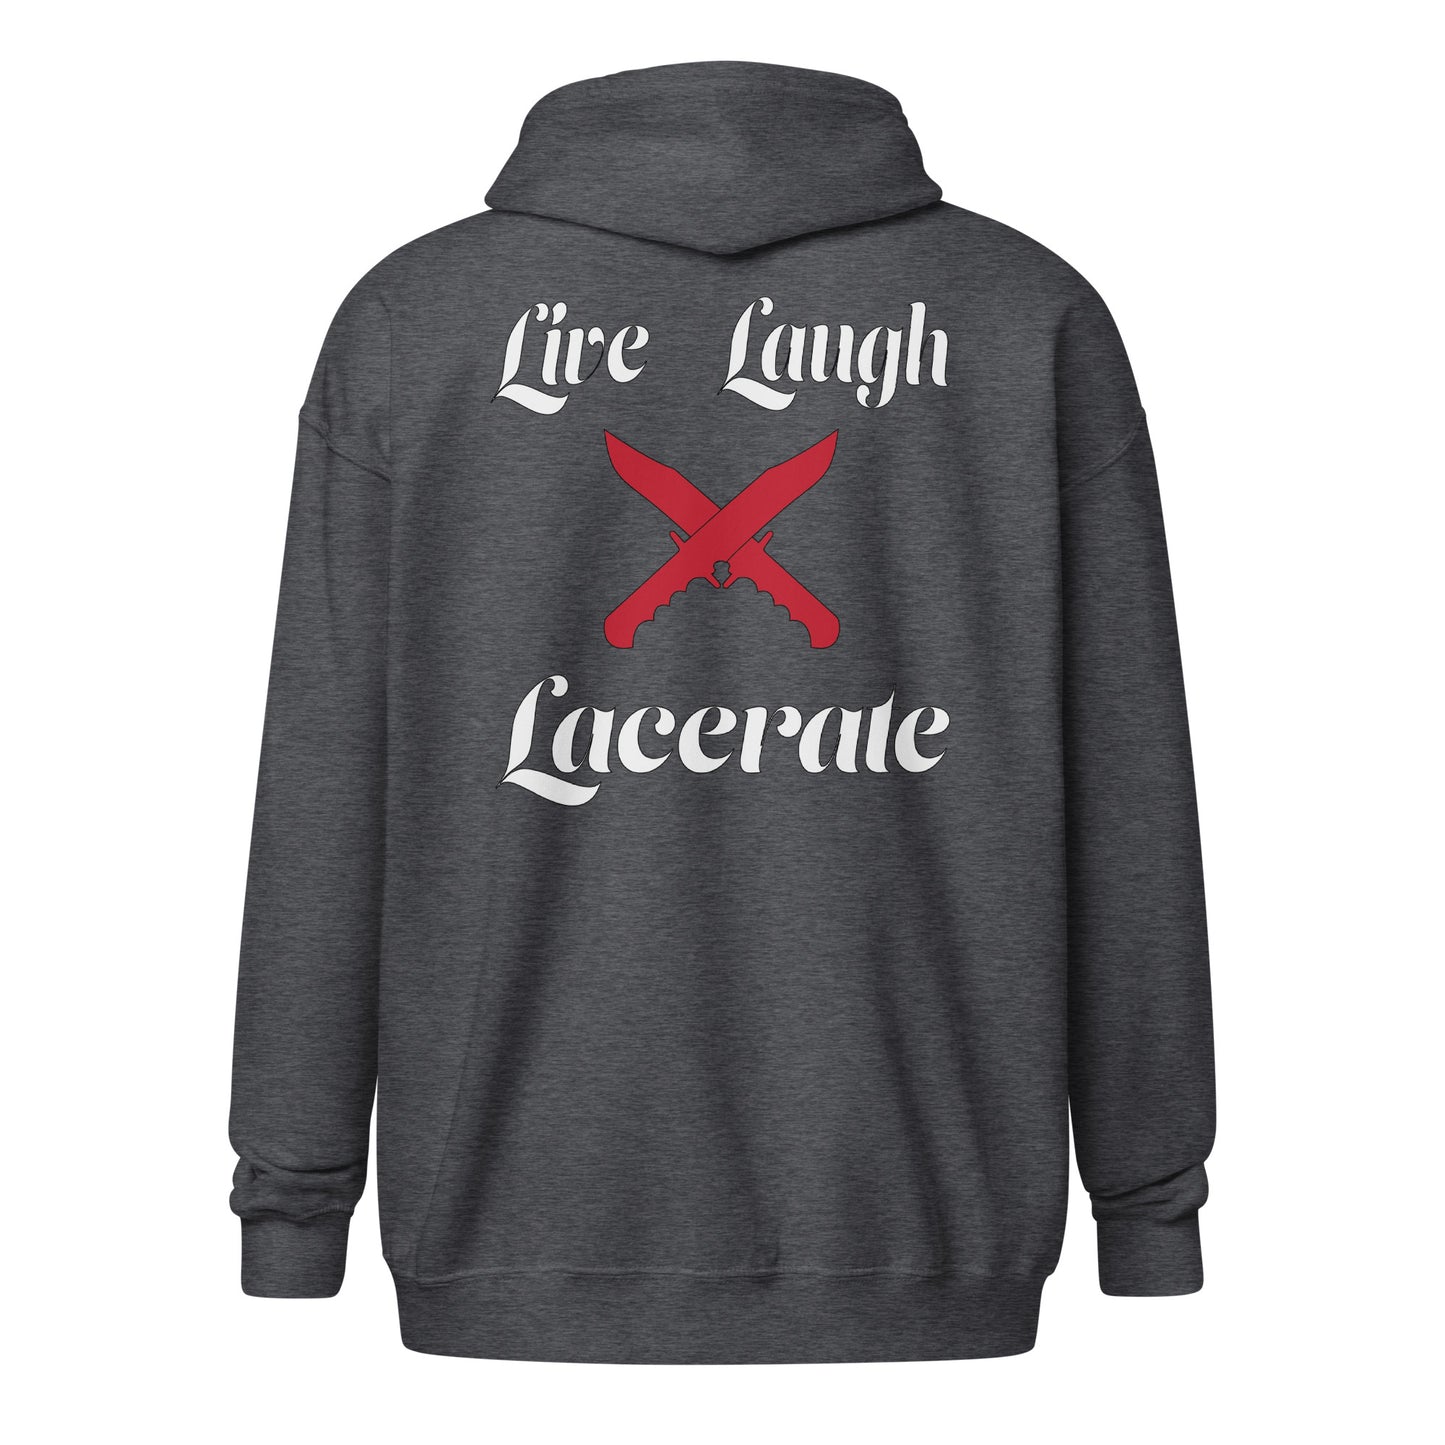 Live Love Lacerate zip hoodie